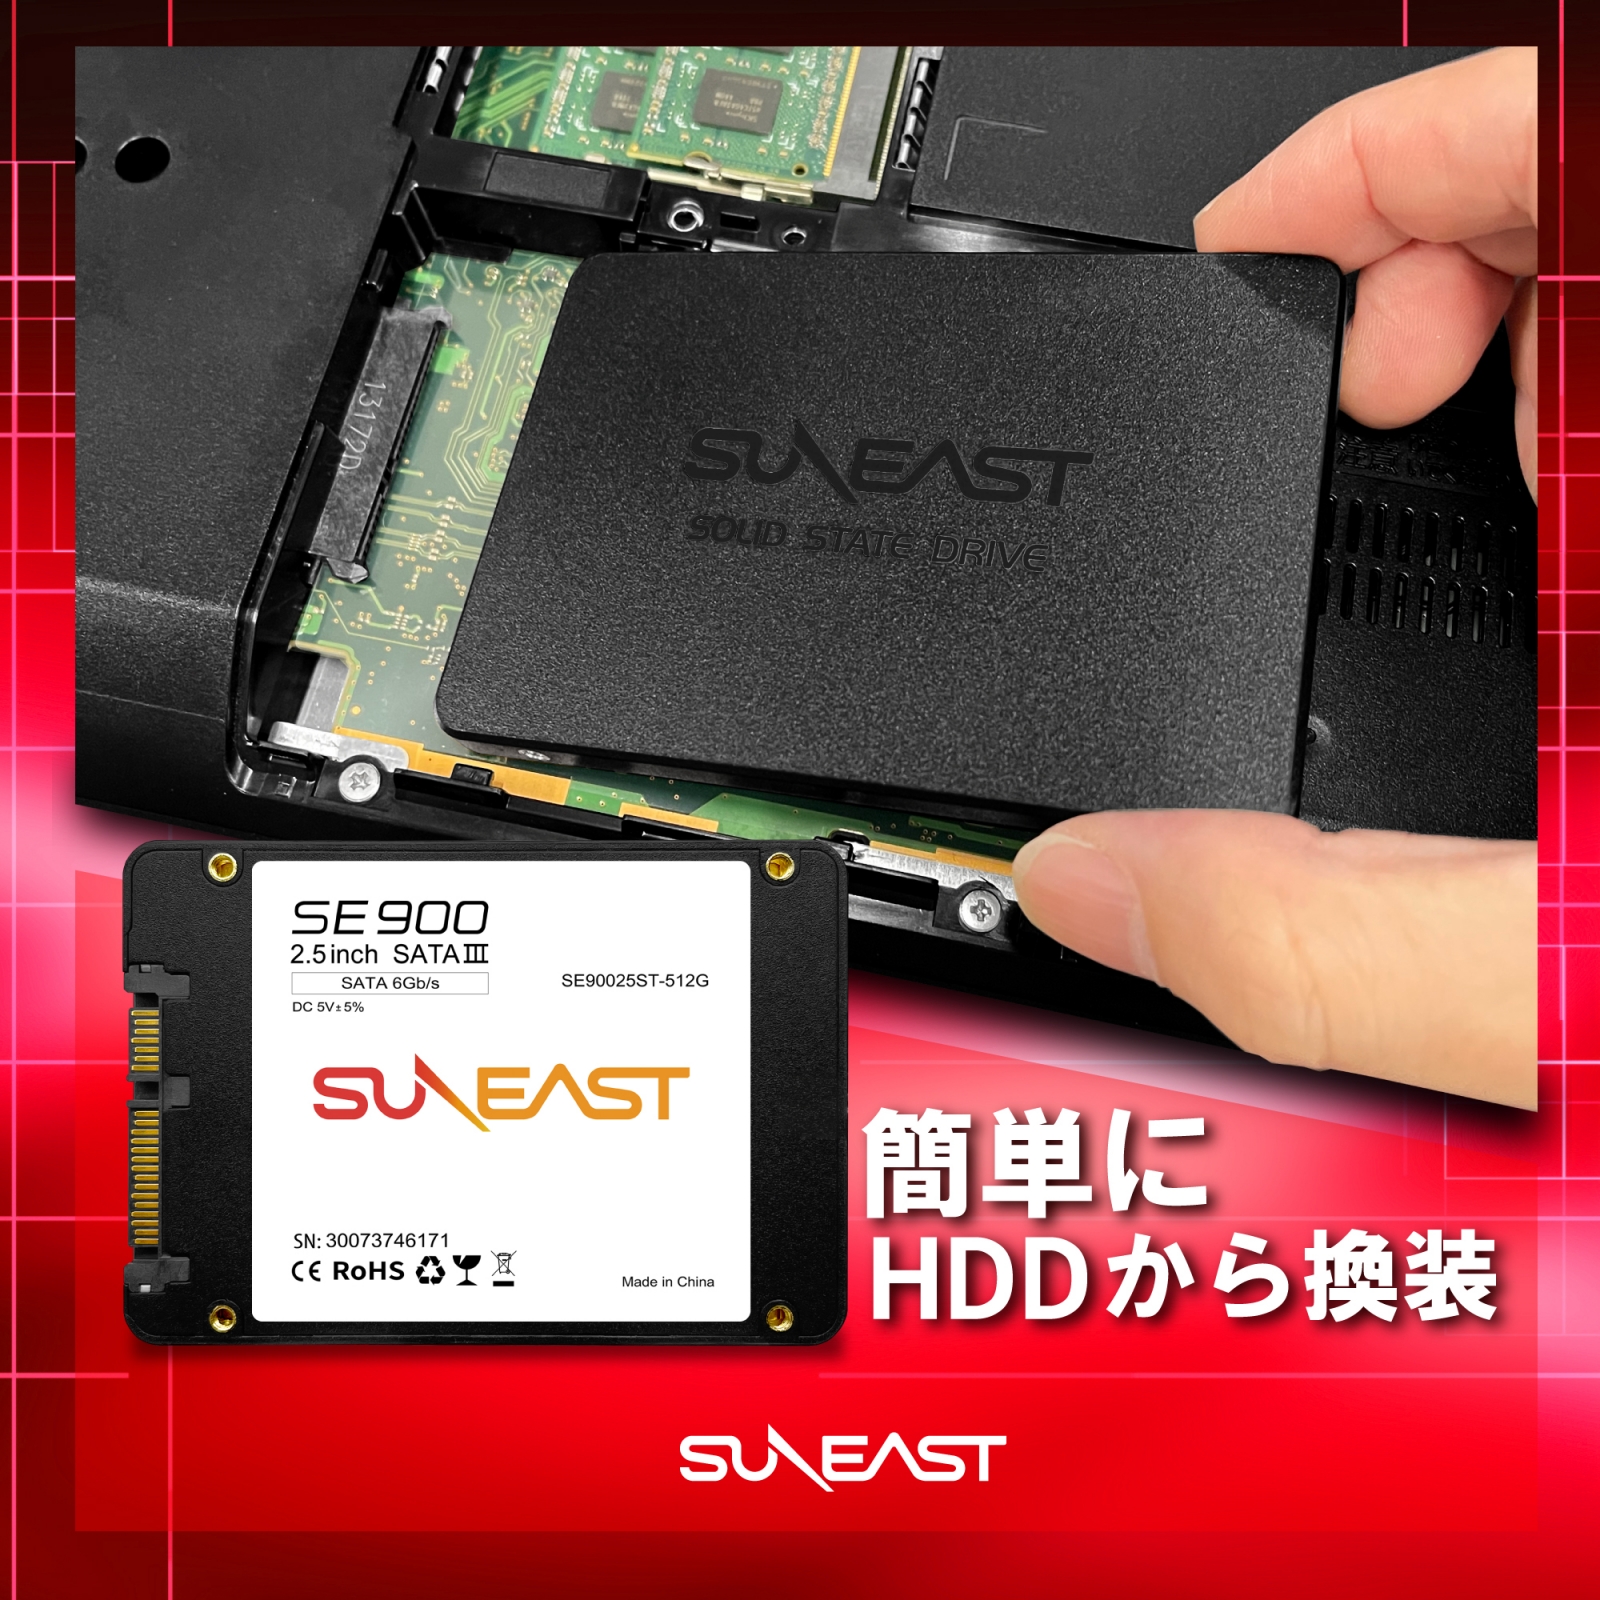 SUNEAST (サンイースト) 1TB 内蔵SSD 2.5インチ 7mm SATA3 6Gb/s 3D 